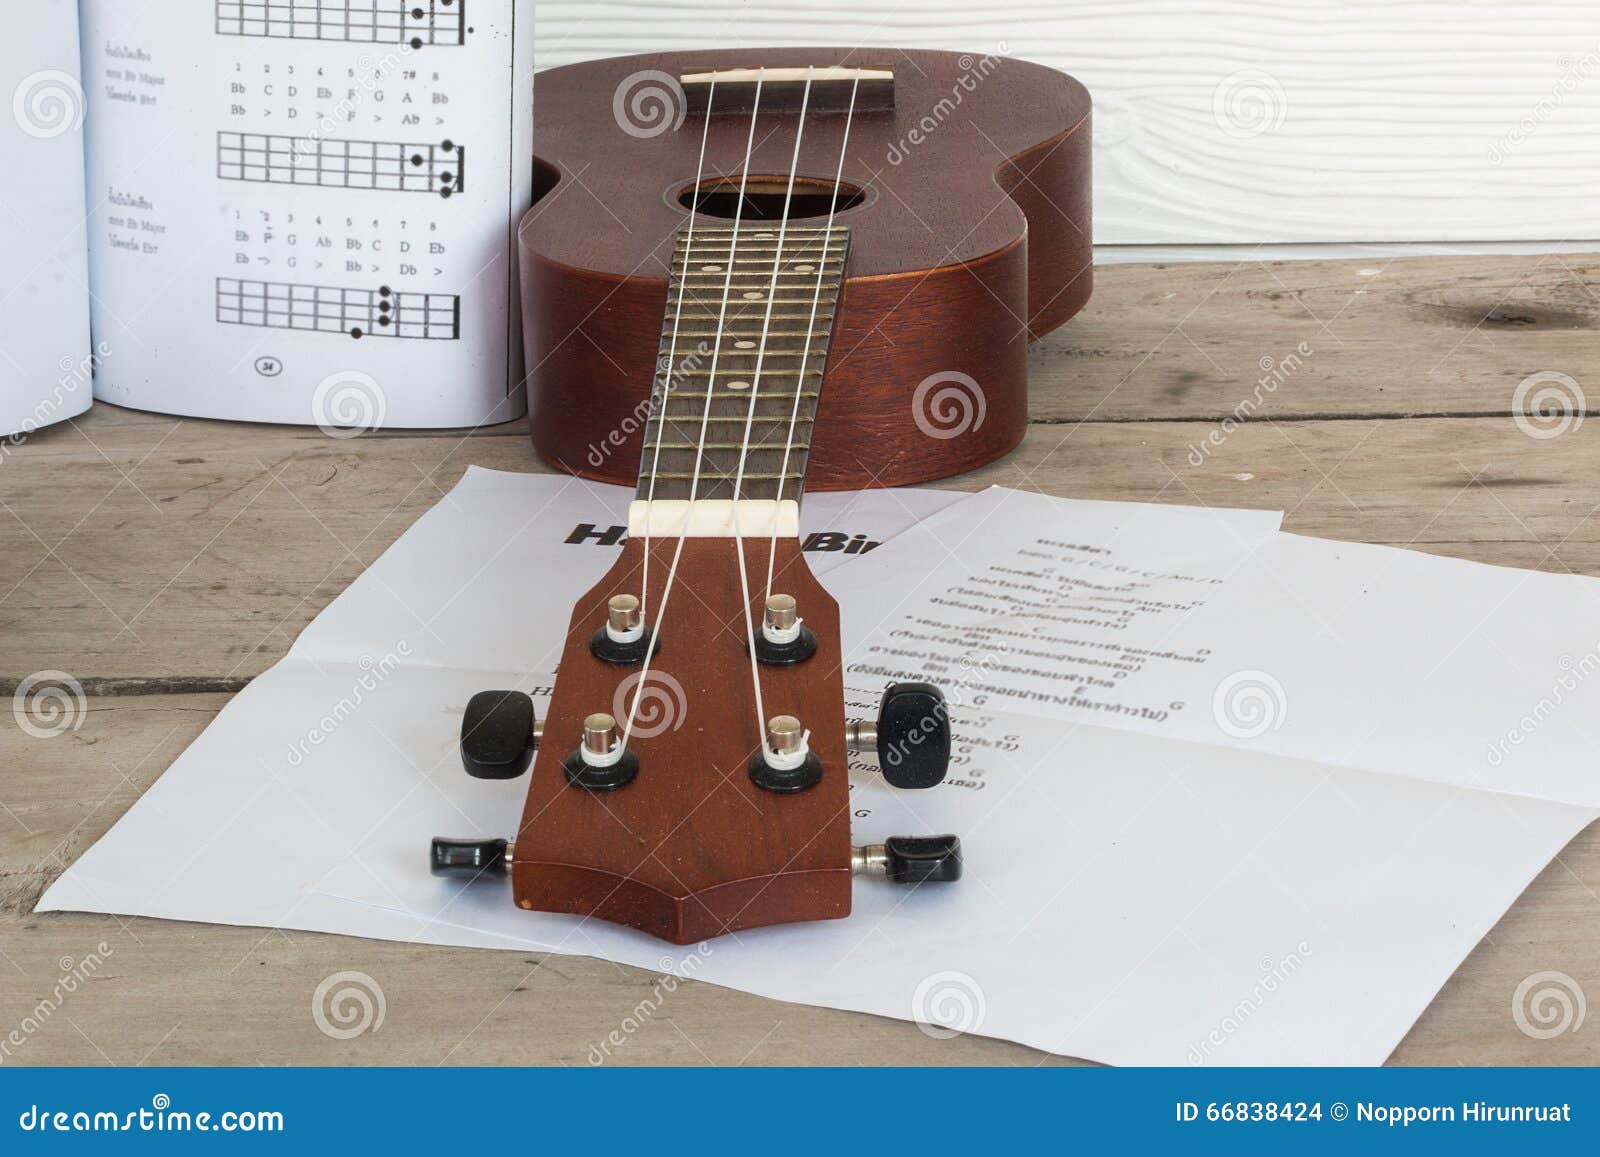 quitar or ukulele